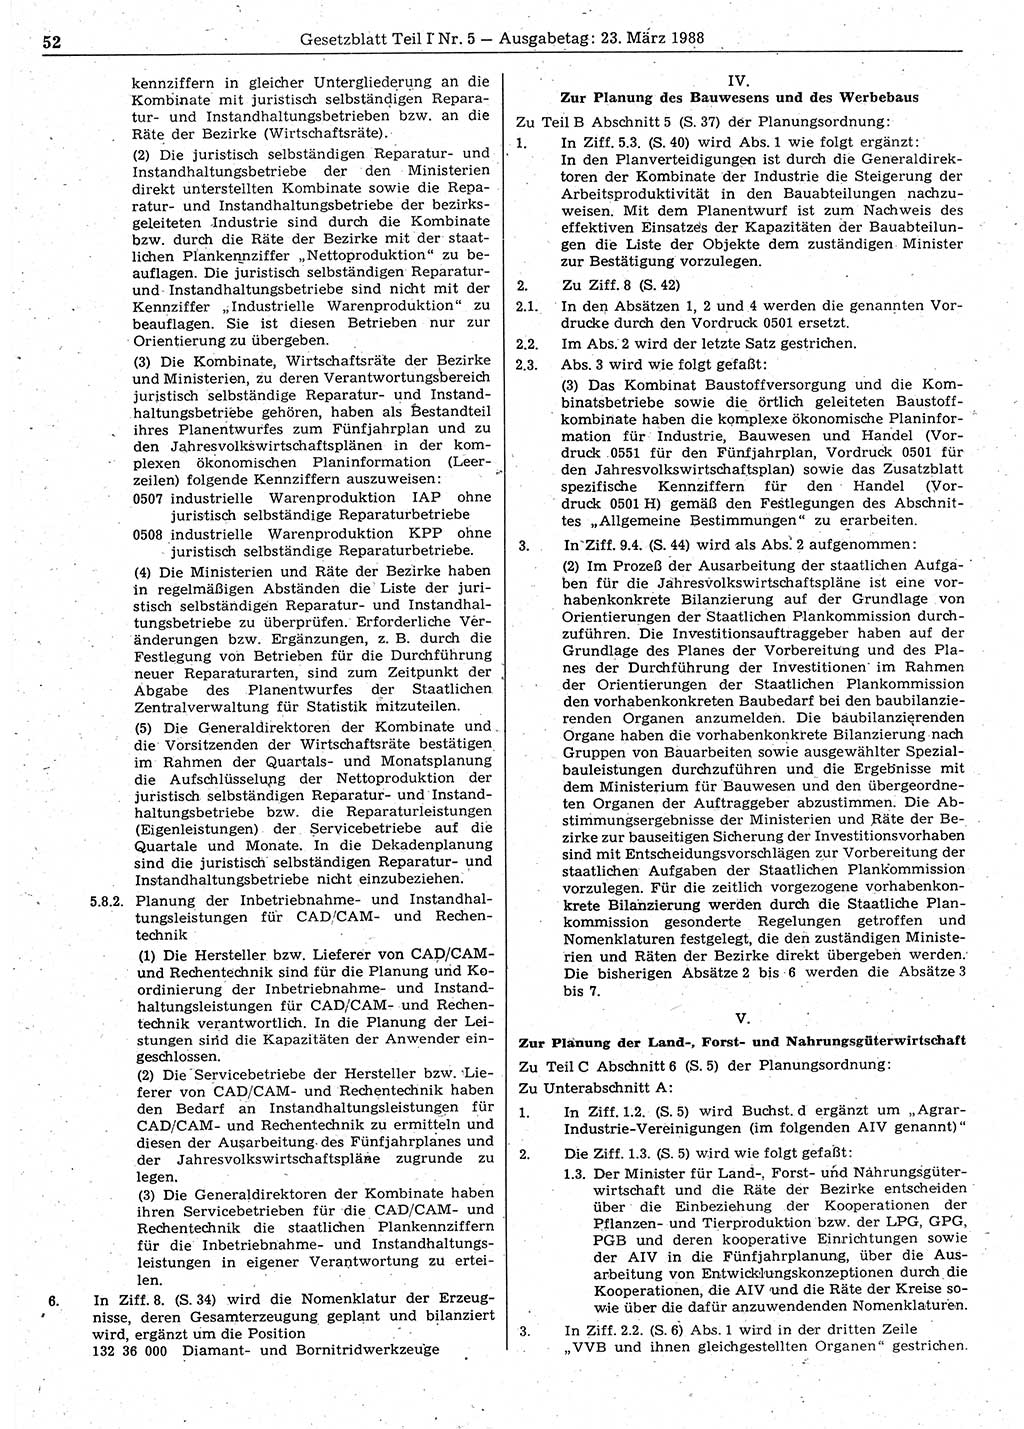 Gesetzblatt (GBl.) der Deutschen Demokratischen Republik (DDR) Teil Ⅰ 1988, Seite 52 (GBl. DDR Ⅰ 1988, S. 52)